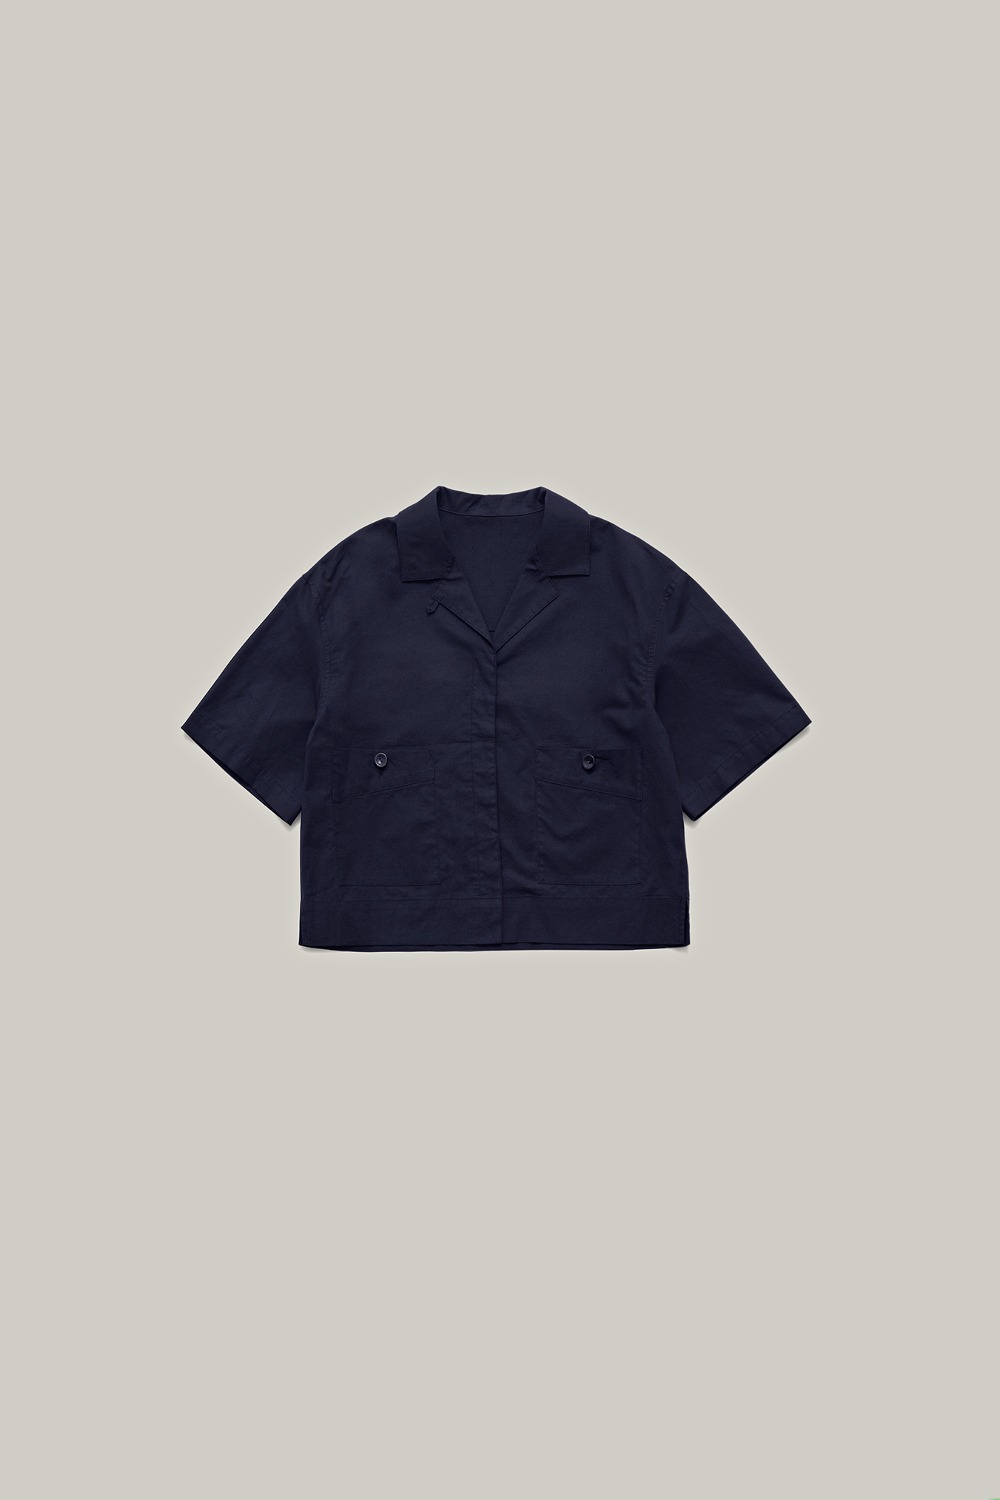 Vere pocket shirt (Navy)